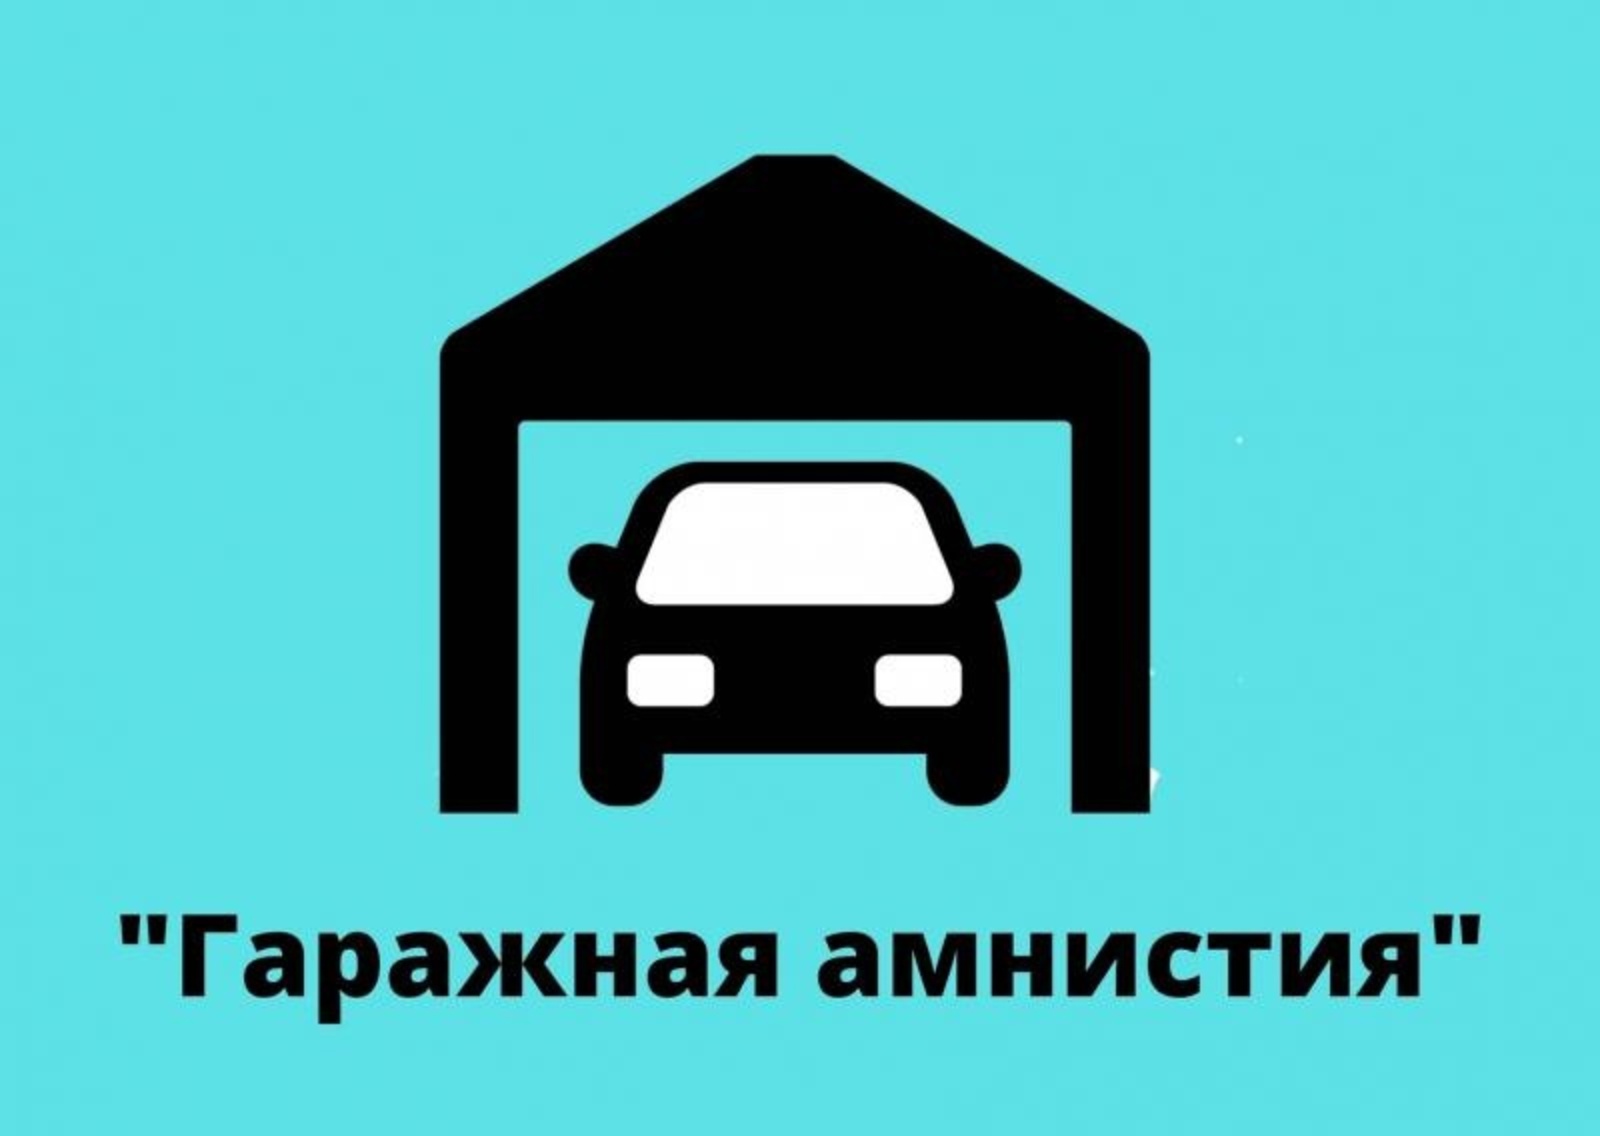 Приморский край является одним из лидеров применения Закона о «гаражной амнистии».